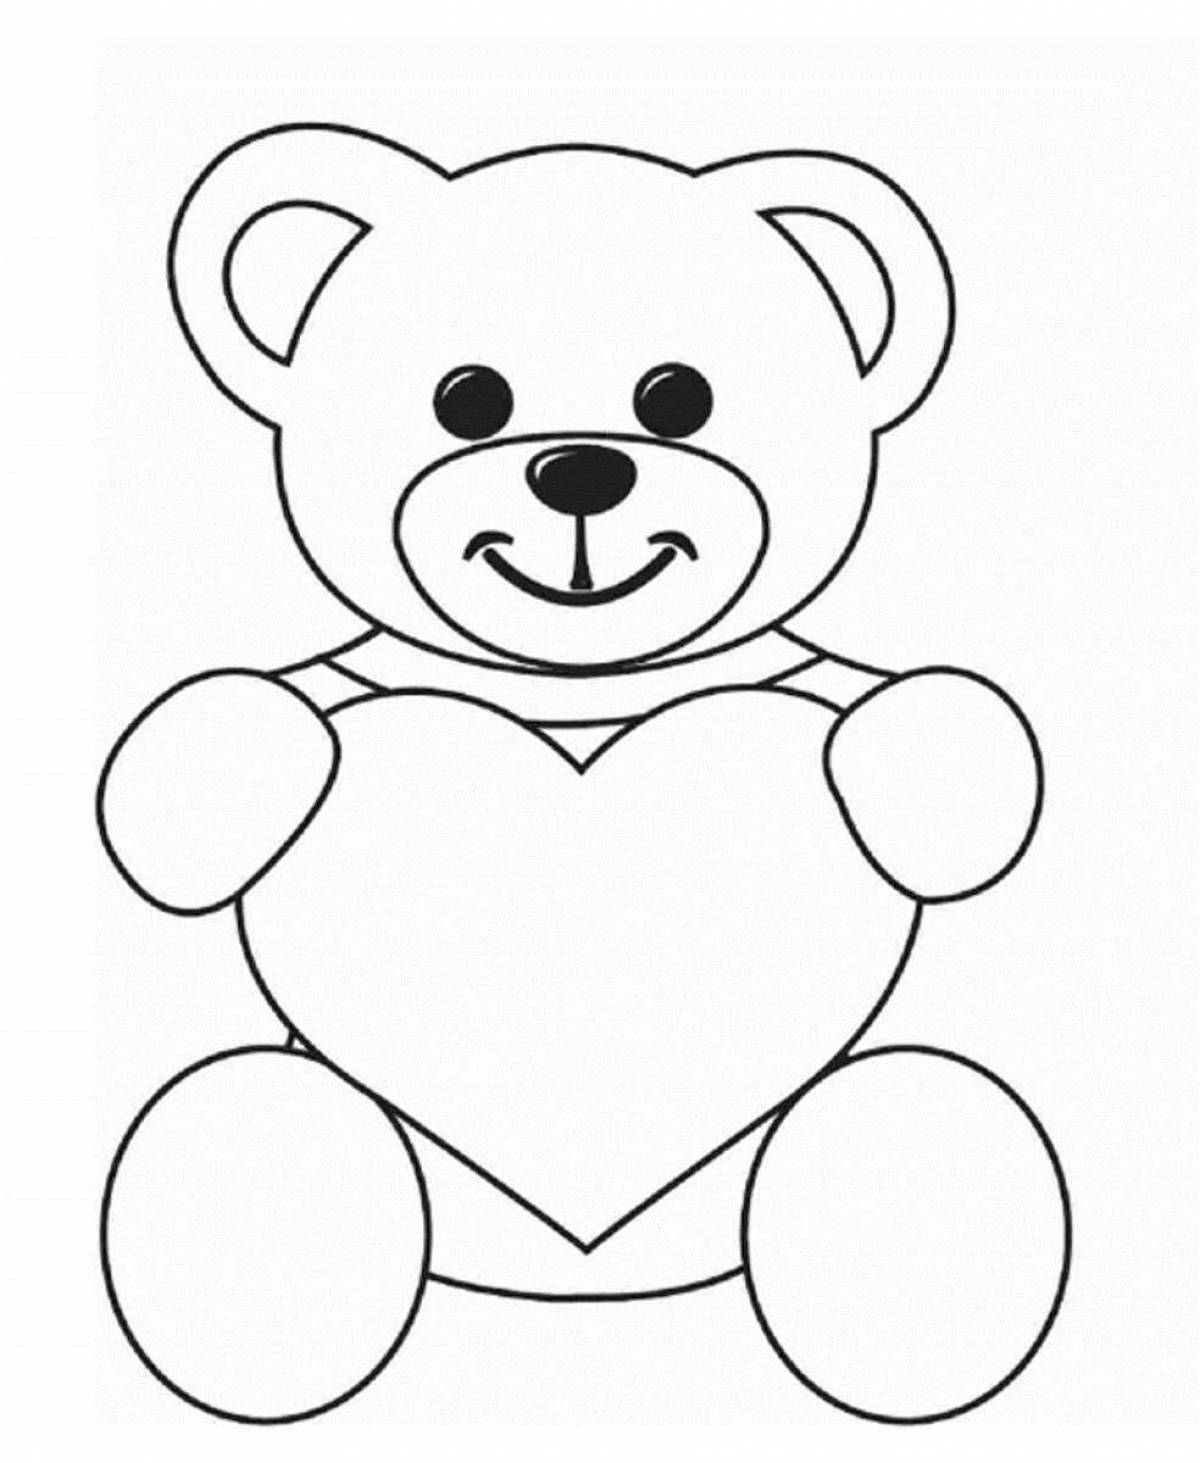 Bear with a heart #3